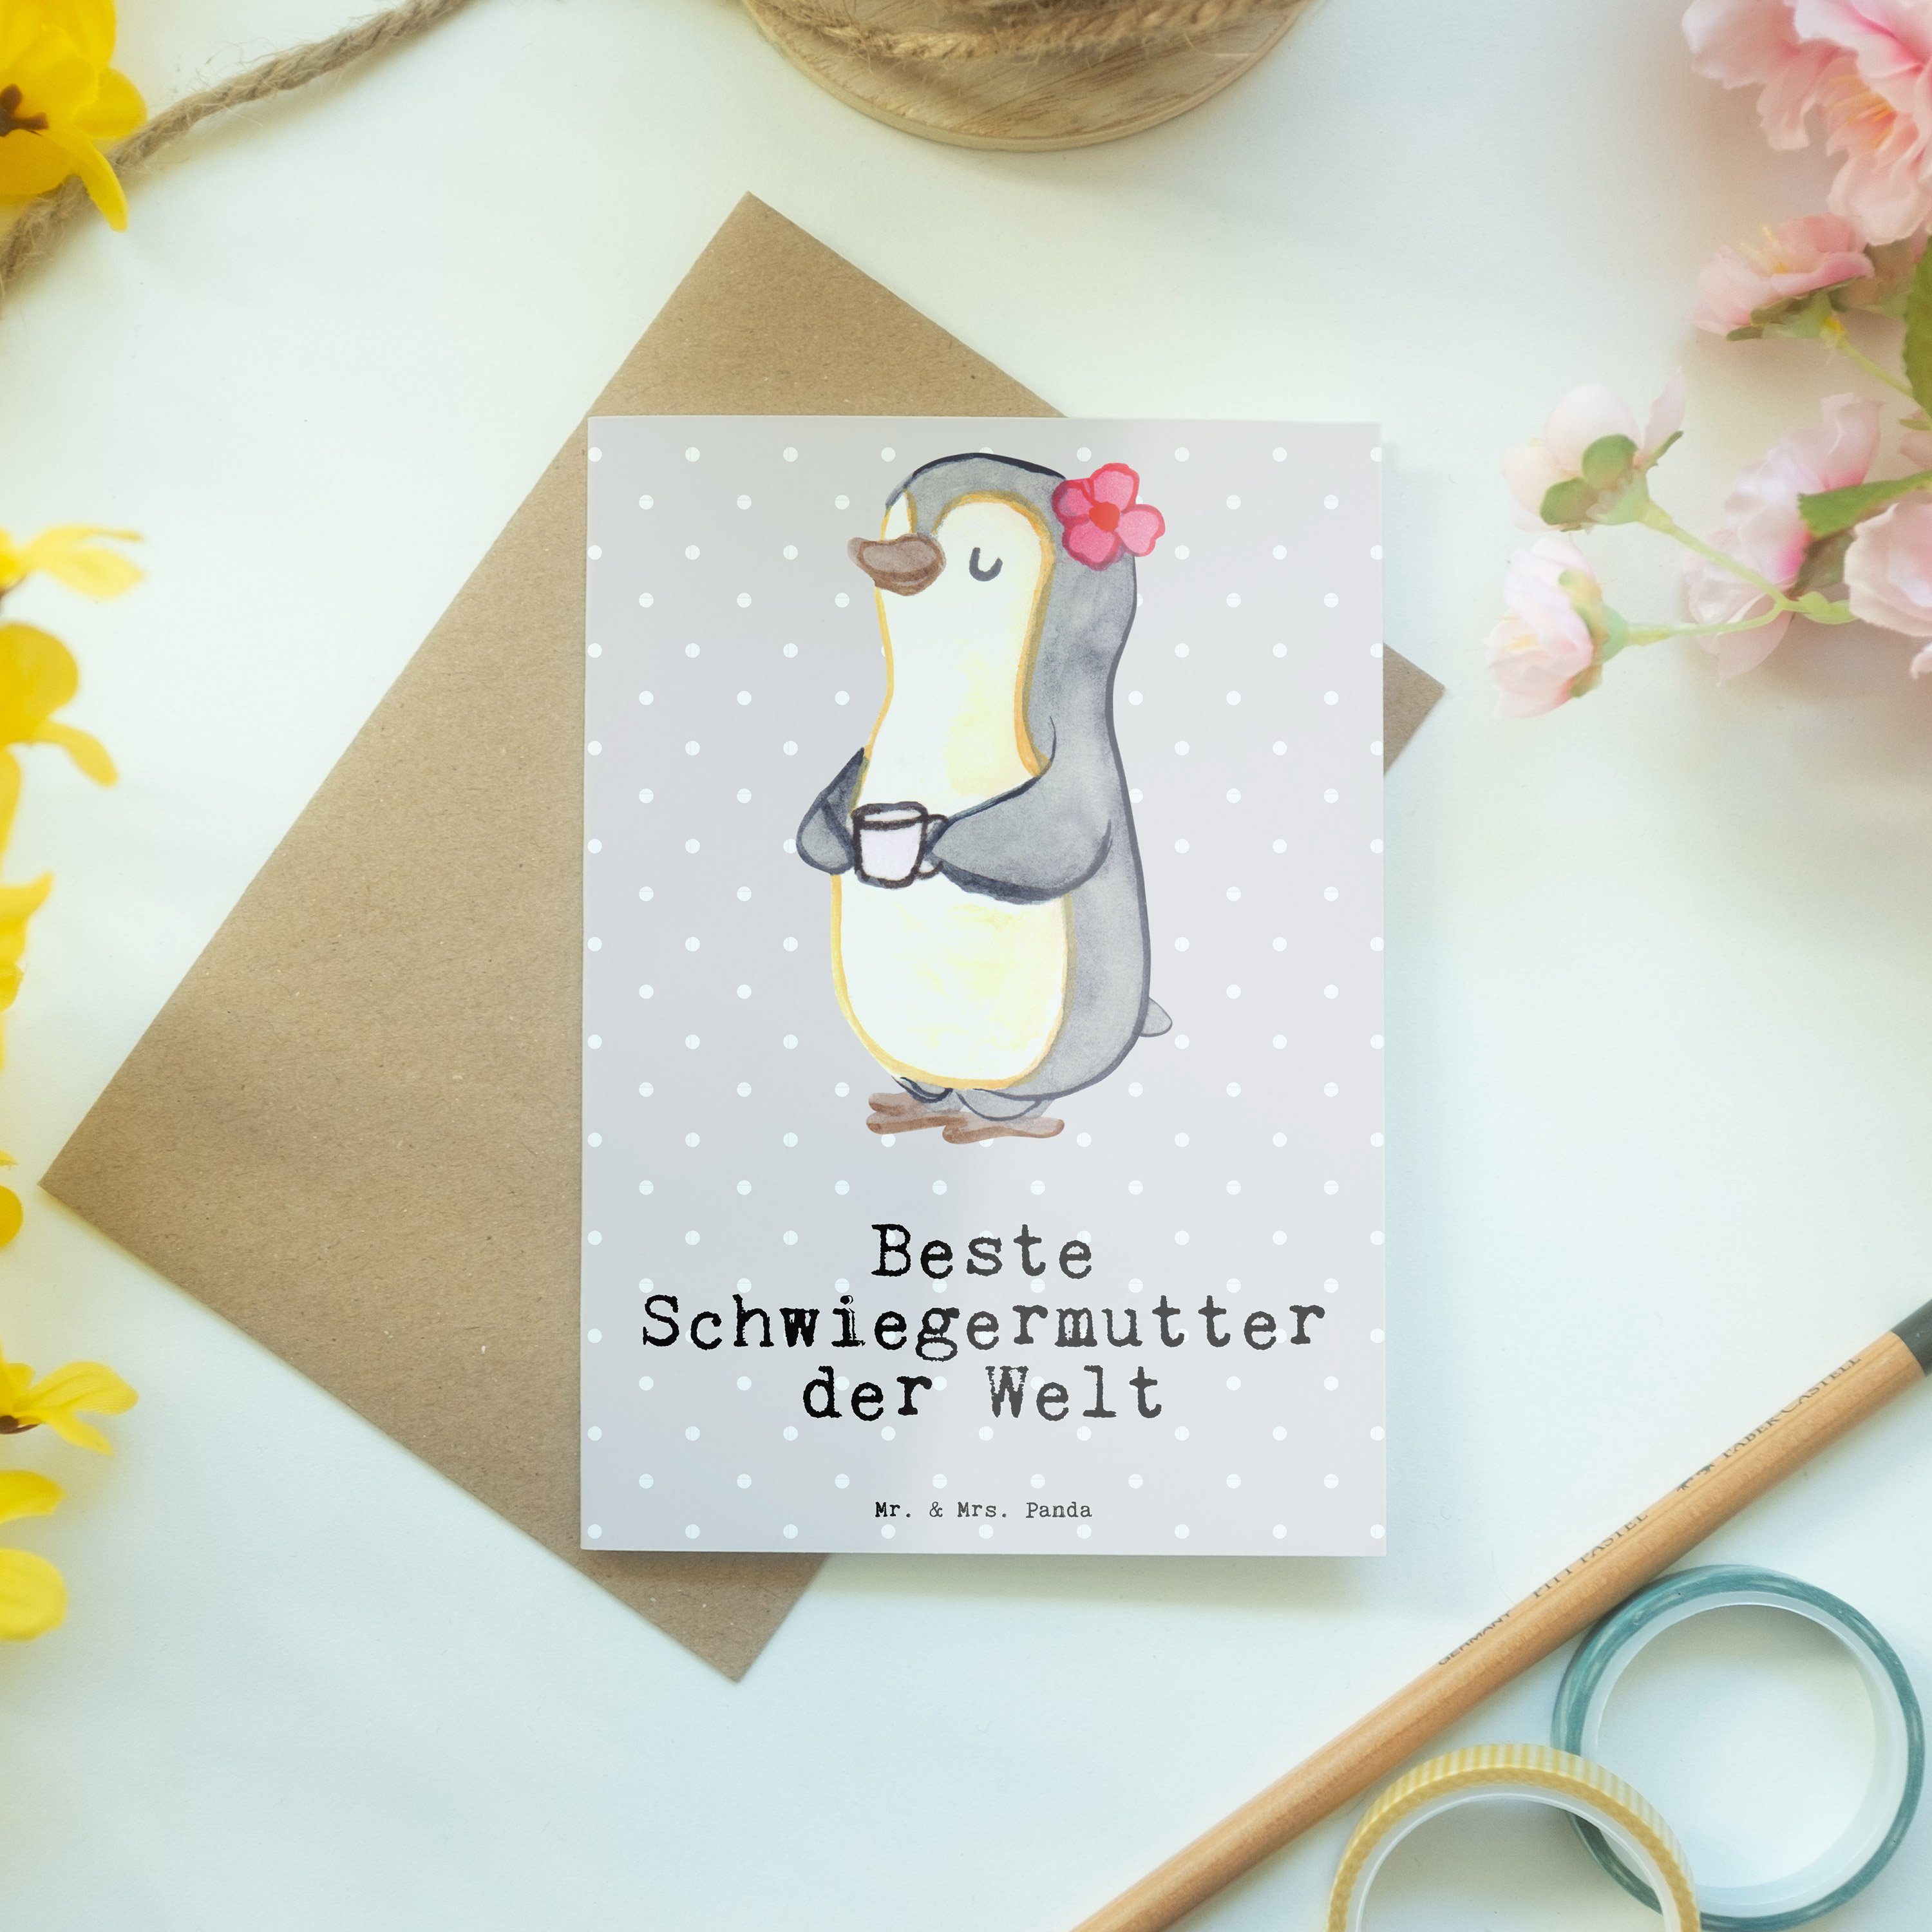 Beste Geschenk, Mrs. Panda Pastell der & Grußkarte Mr. Pinguin Schwiegermutter - Grau - Kla Welt